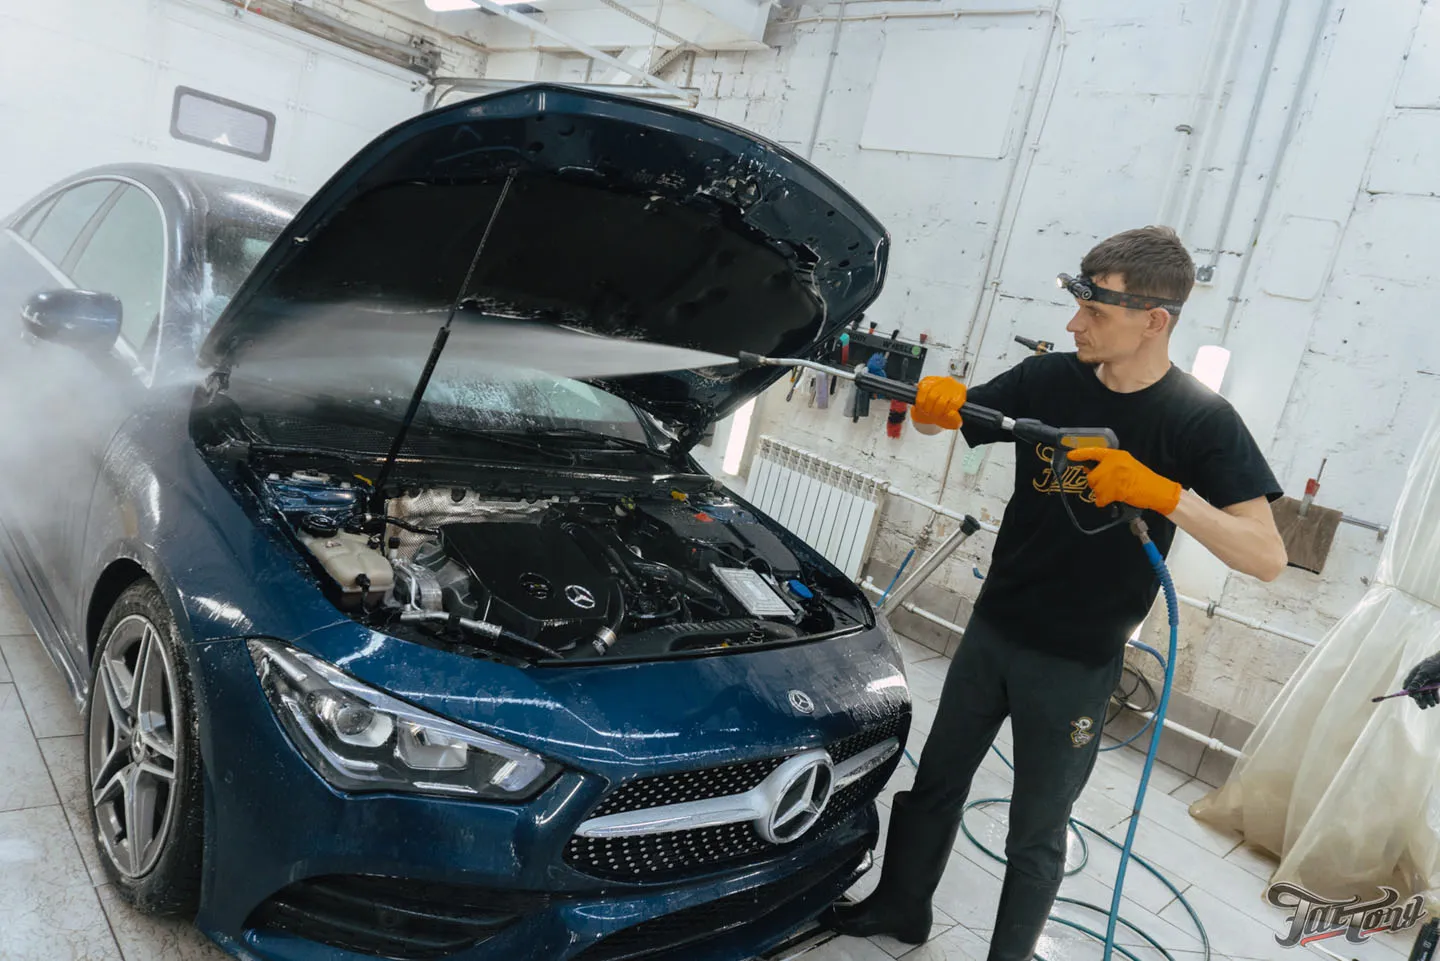 Кузовной ремонт Mercedes CLA, полировка кузова + покрытие керамикой, химчистка салона, мойка подкапотного пространства